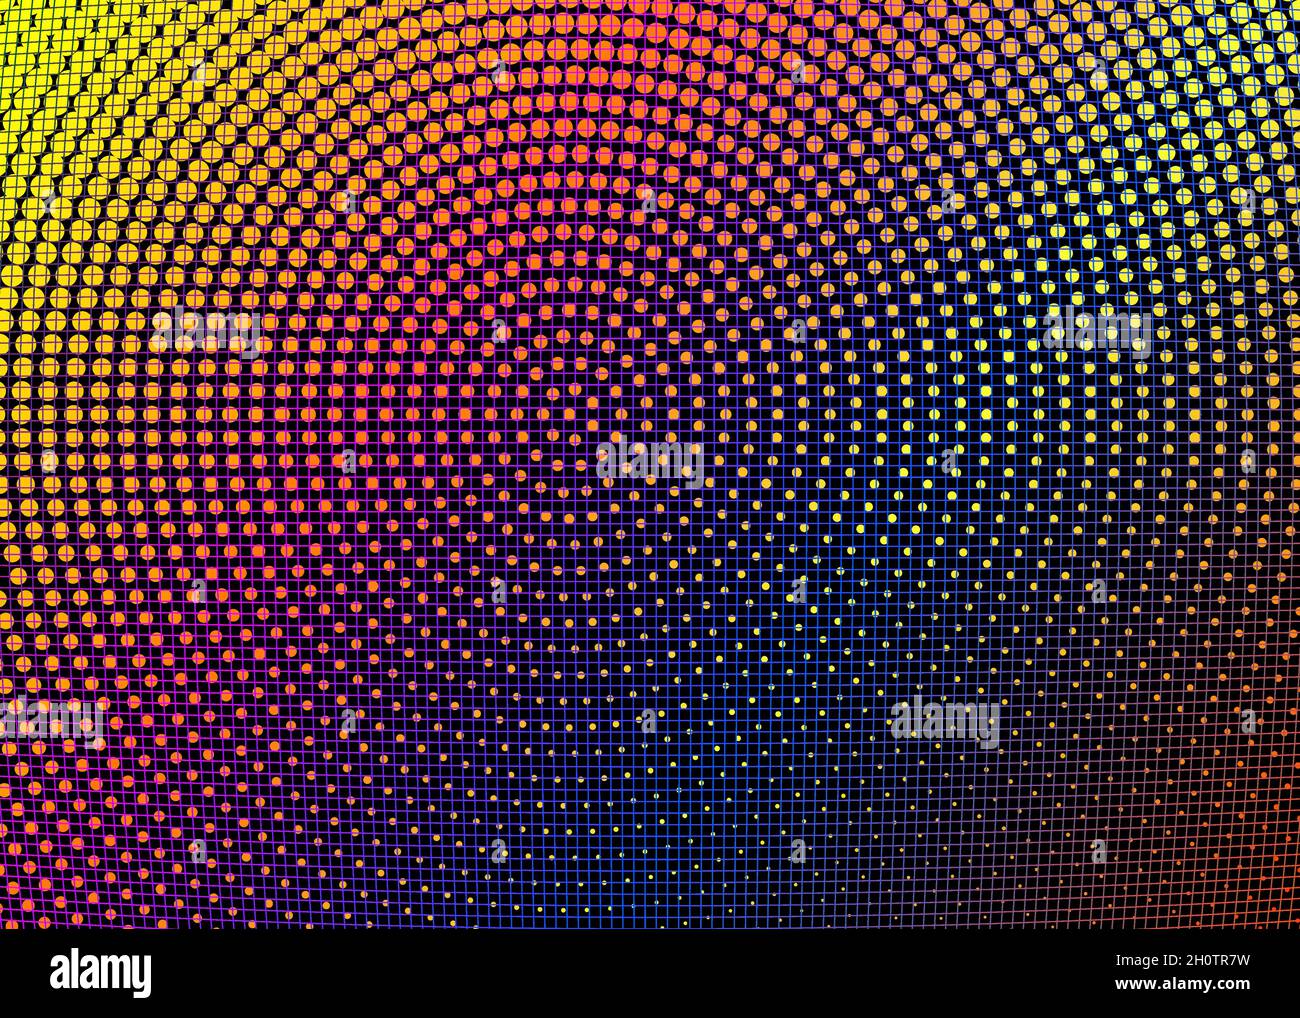 Modello di texture punteggiato. Griglia multicolore chiara, cerchio geometrico moderno del vettore arcobaleno. Motivo geometrico in stile mezzitoni con colore sfumato Illustrazione Vettoriale